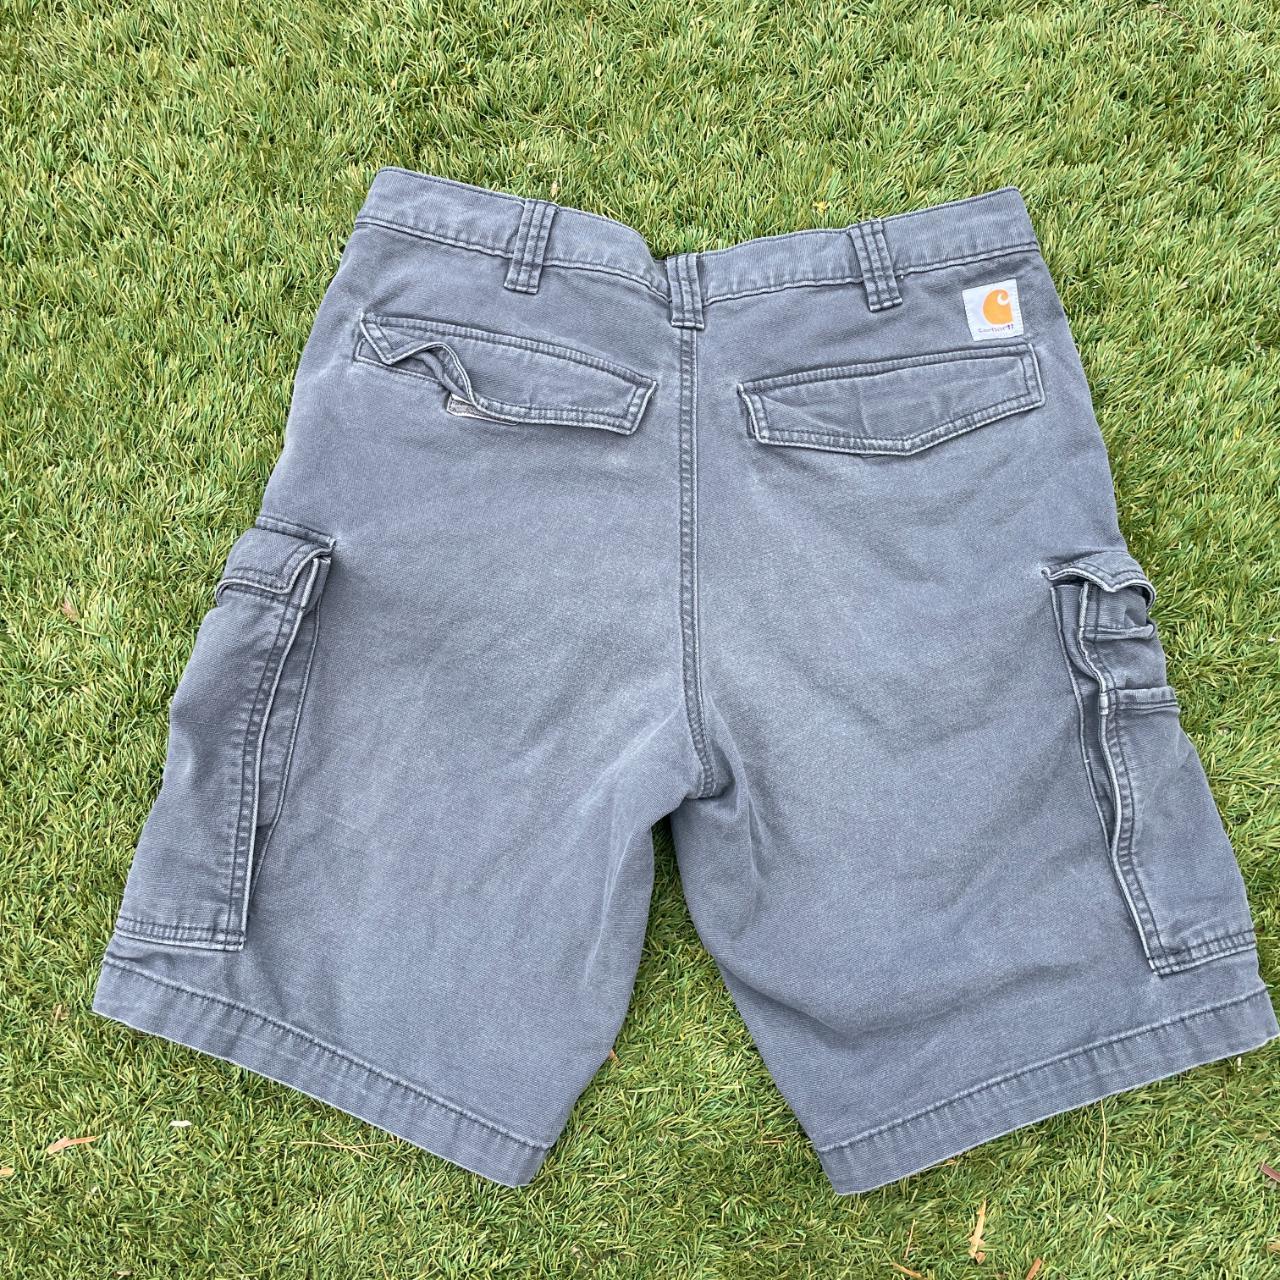 Carhartt Shorts Men's 34 Gray Rugged Flex® Relaxed... - Depop